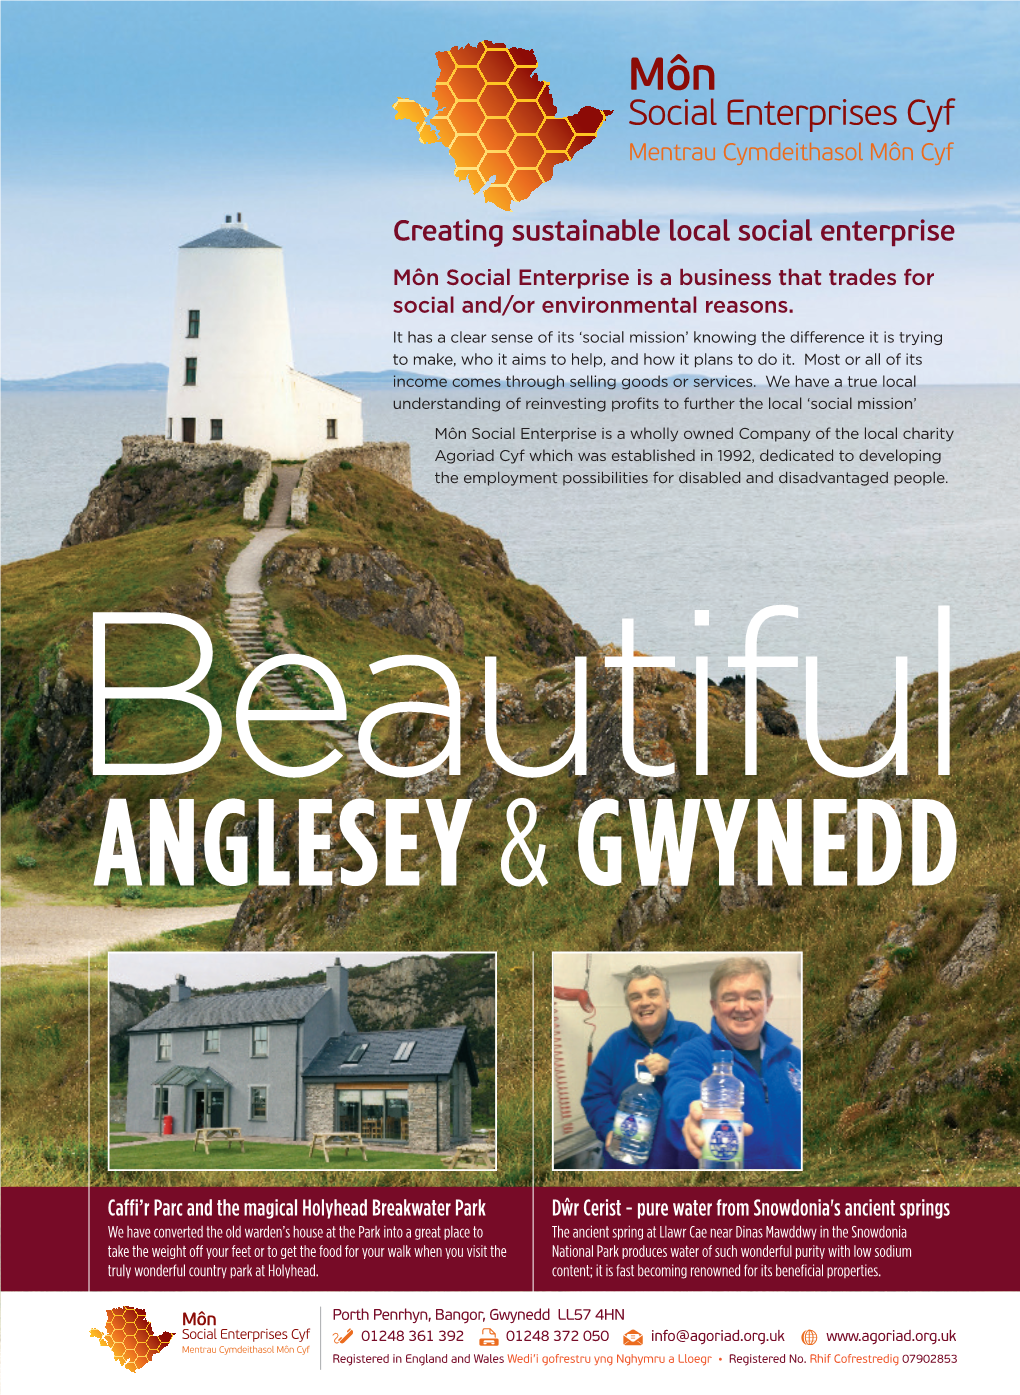 Anglesey & Gwynedd